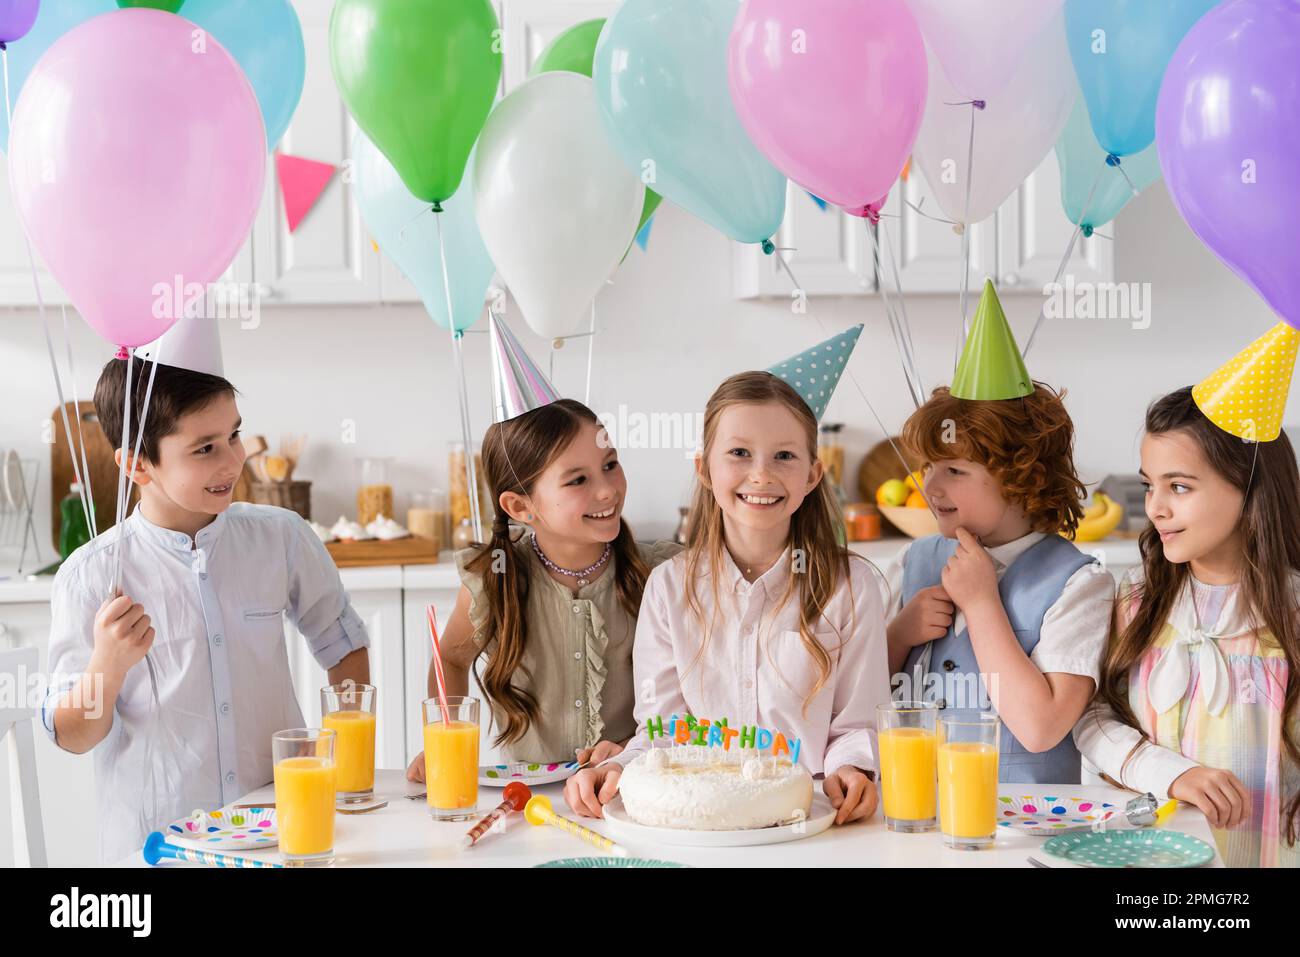 grupo de niños felices en gorras de fiesta que se divierten durante la celebración de cumpleaños junto a globos en casa, imagen de stock Foto de stock